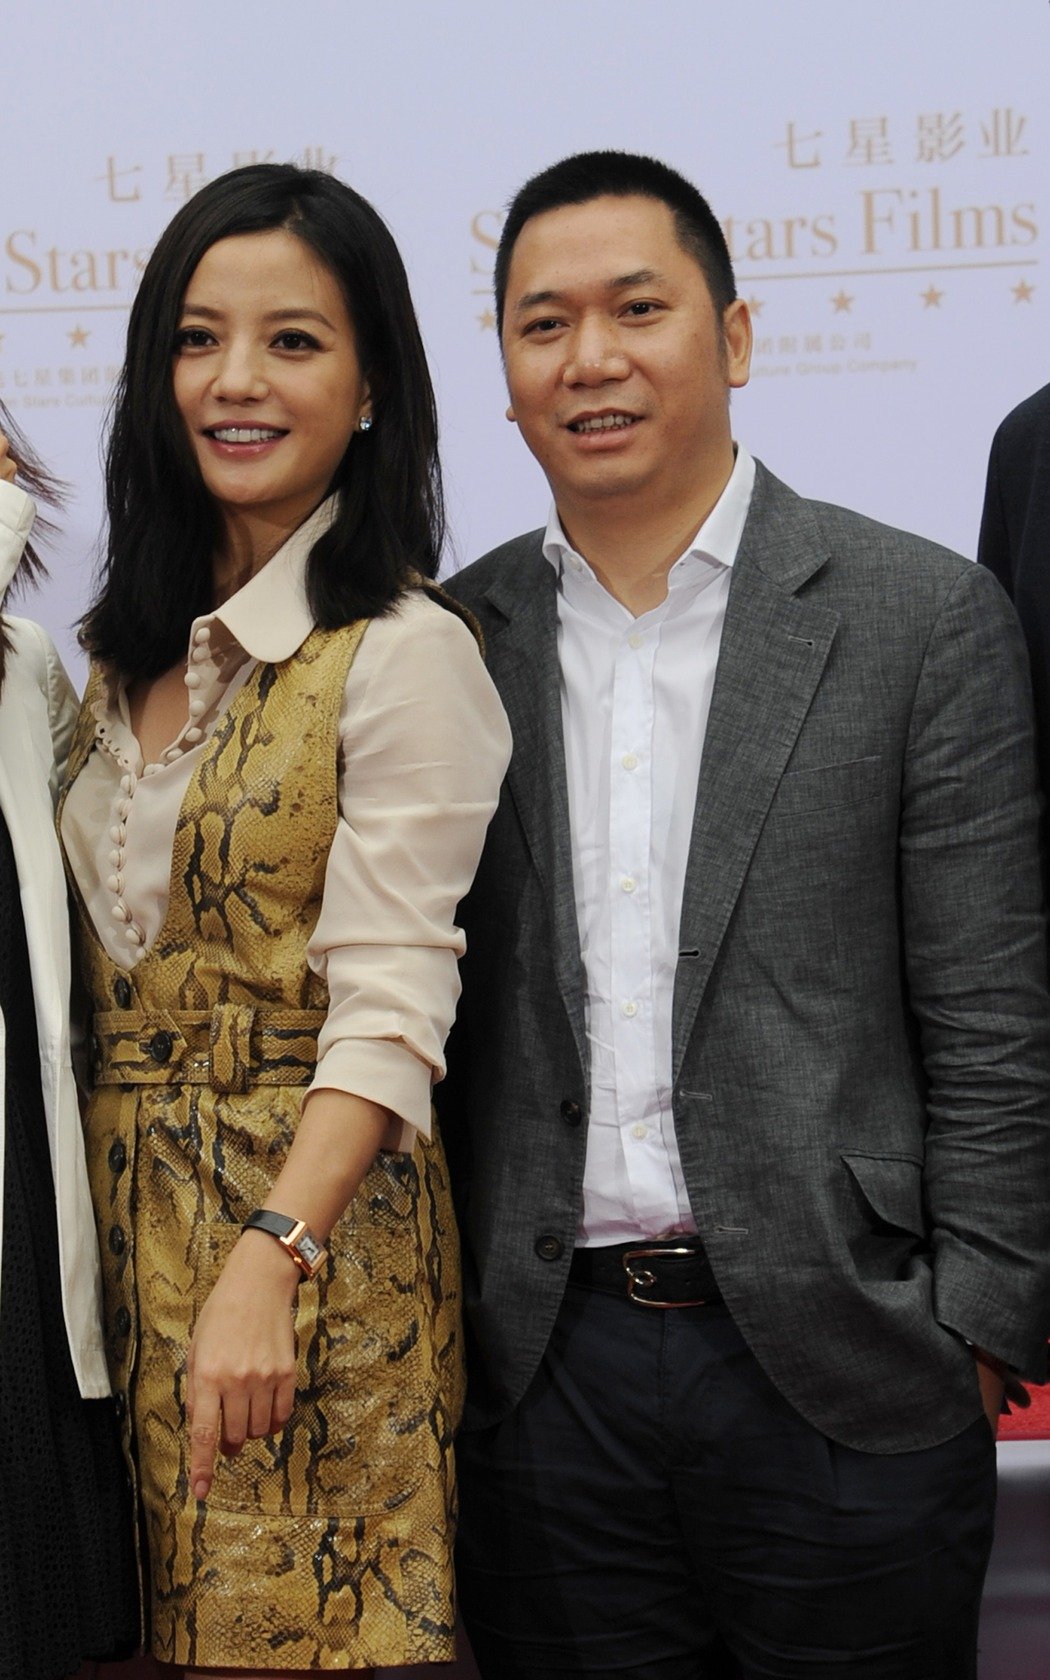 2008年,赵薇与商人黄有龙交往,同年,二人注册结婚.